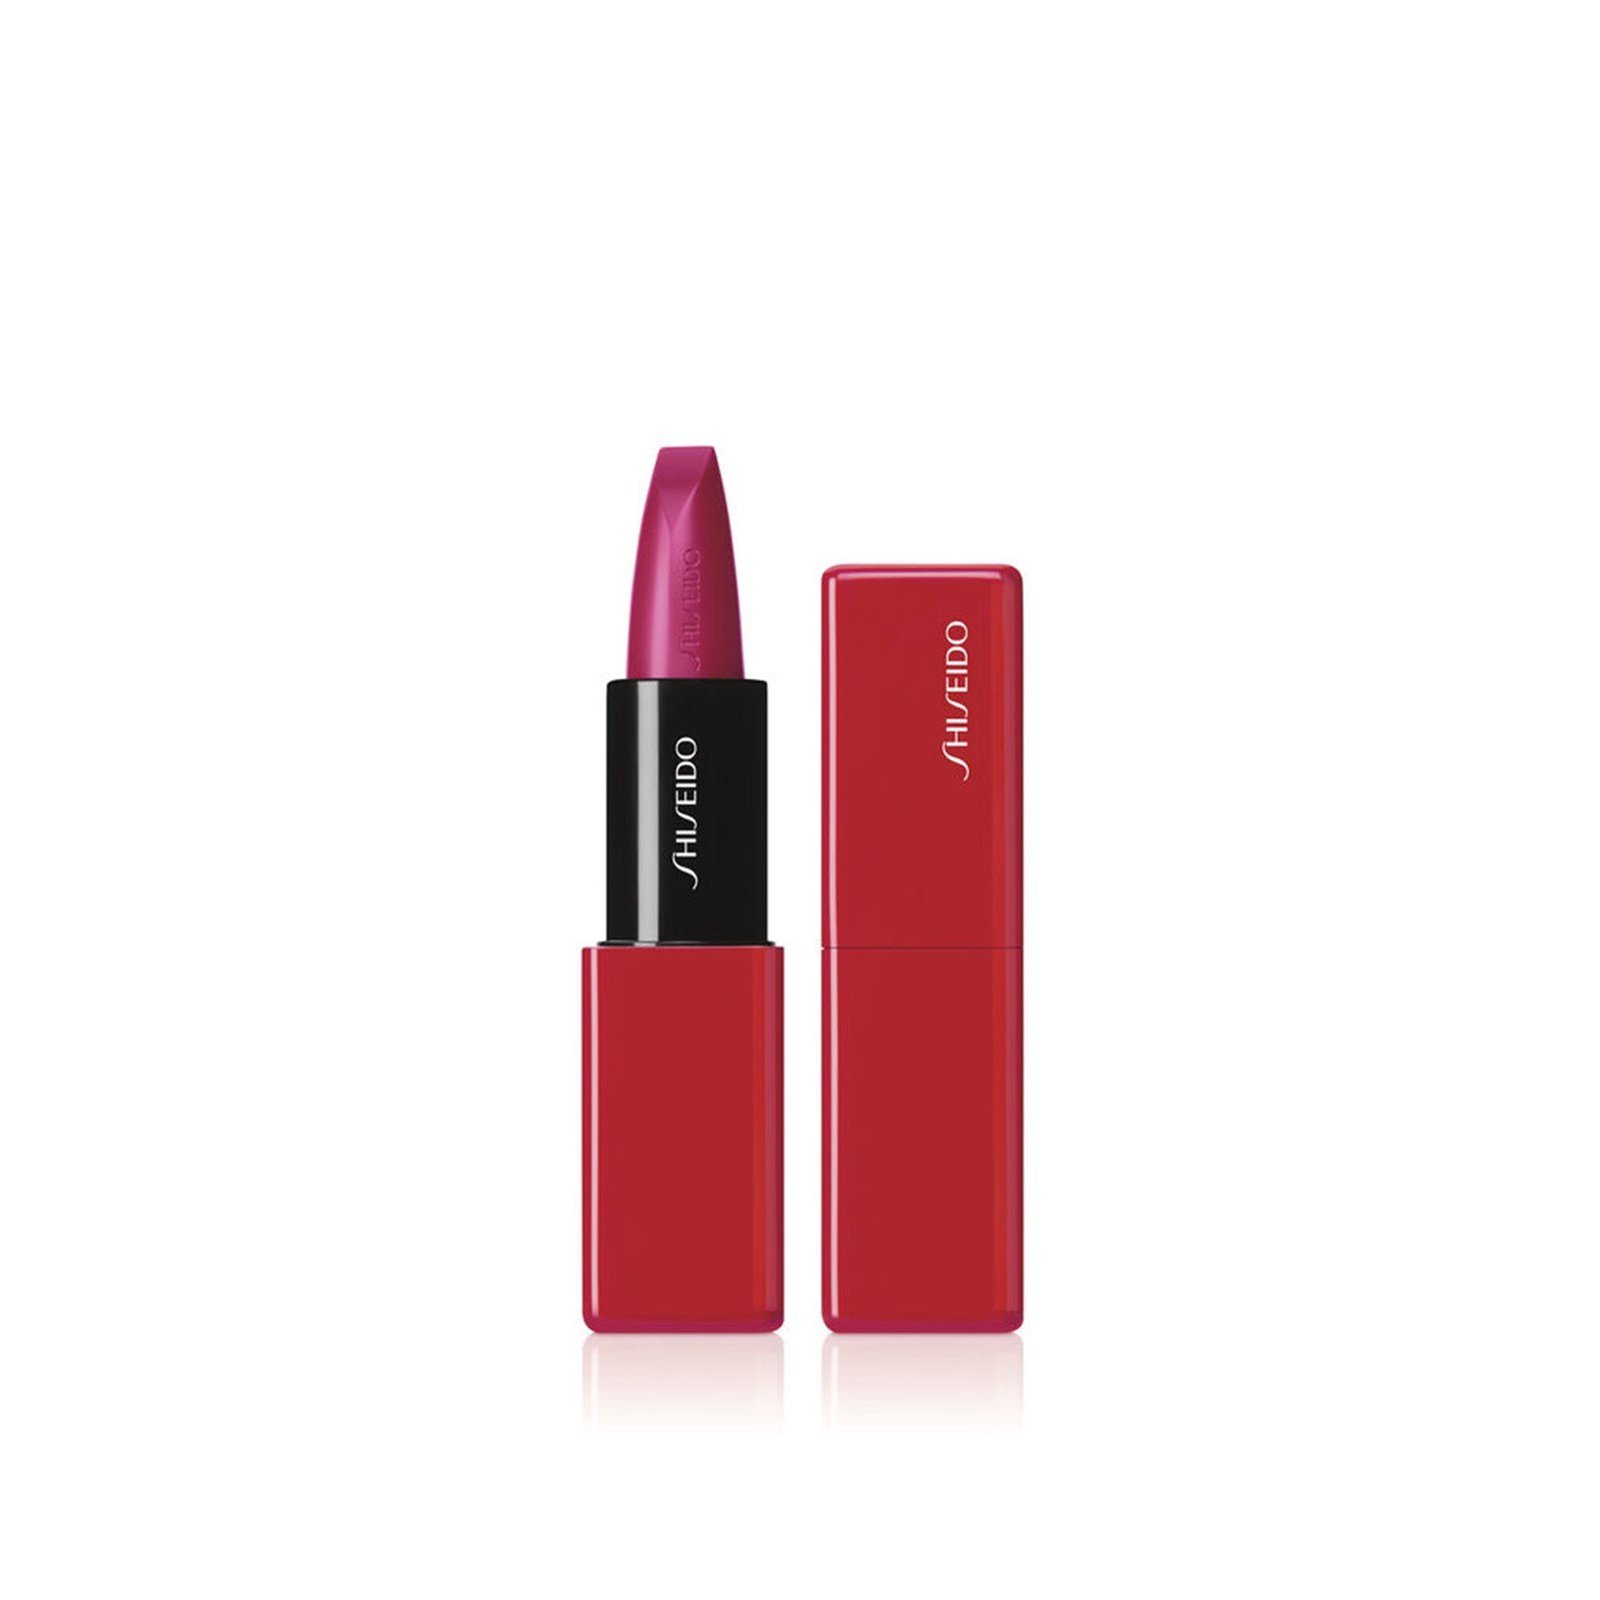 Shiseido TechnoSatin Gel Lipstick 422 Fuchsia Flux 3.3g (0.11oz)